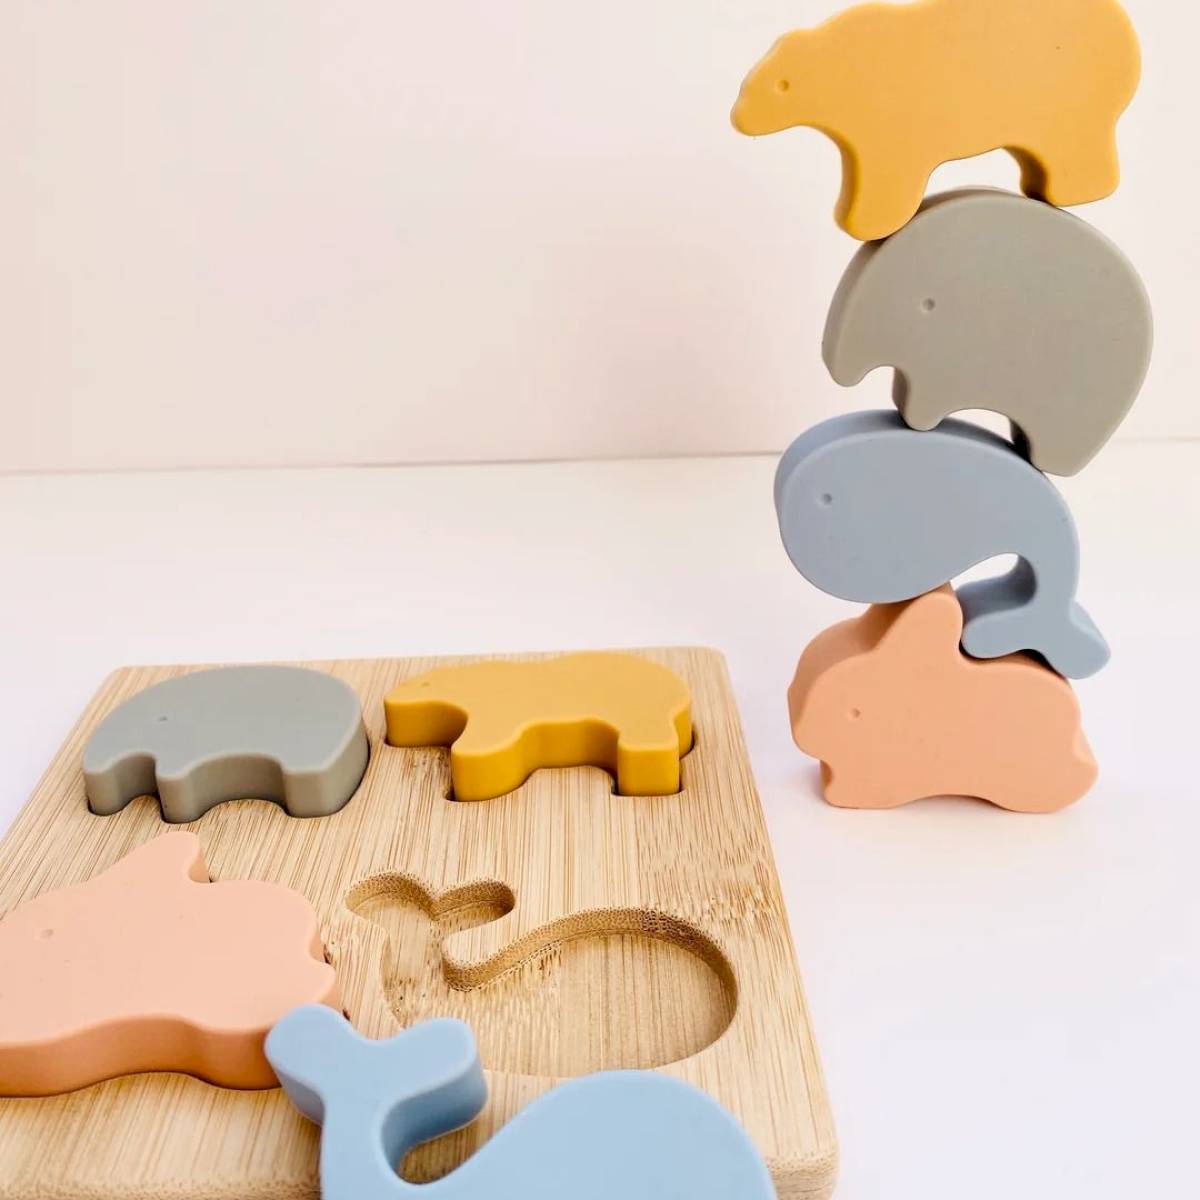 XZNGL Jouets pour enfants Puzzles pour tout-petits Puzzles en bois